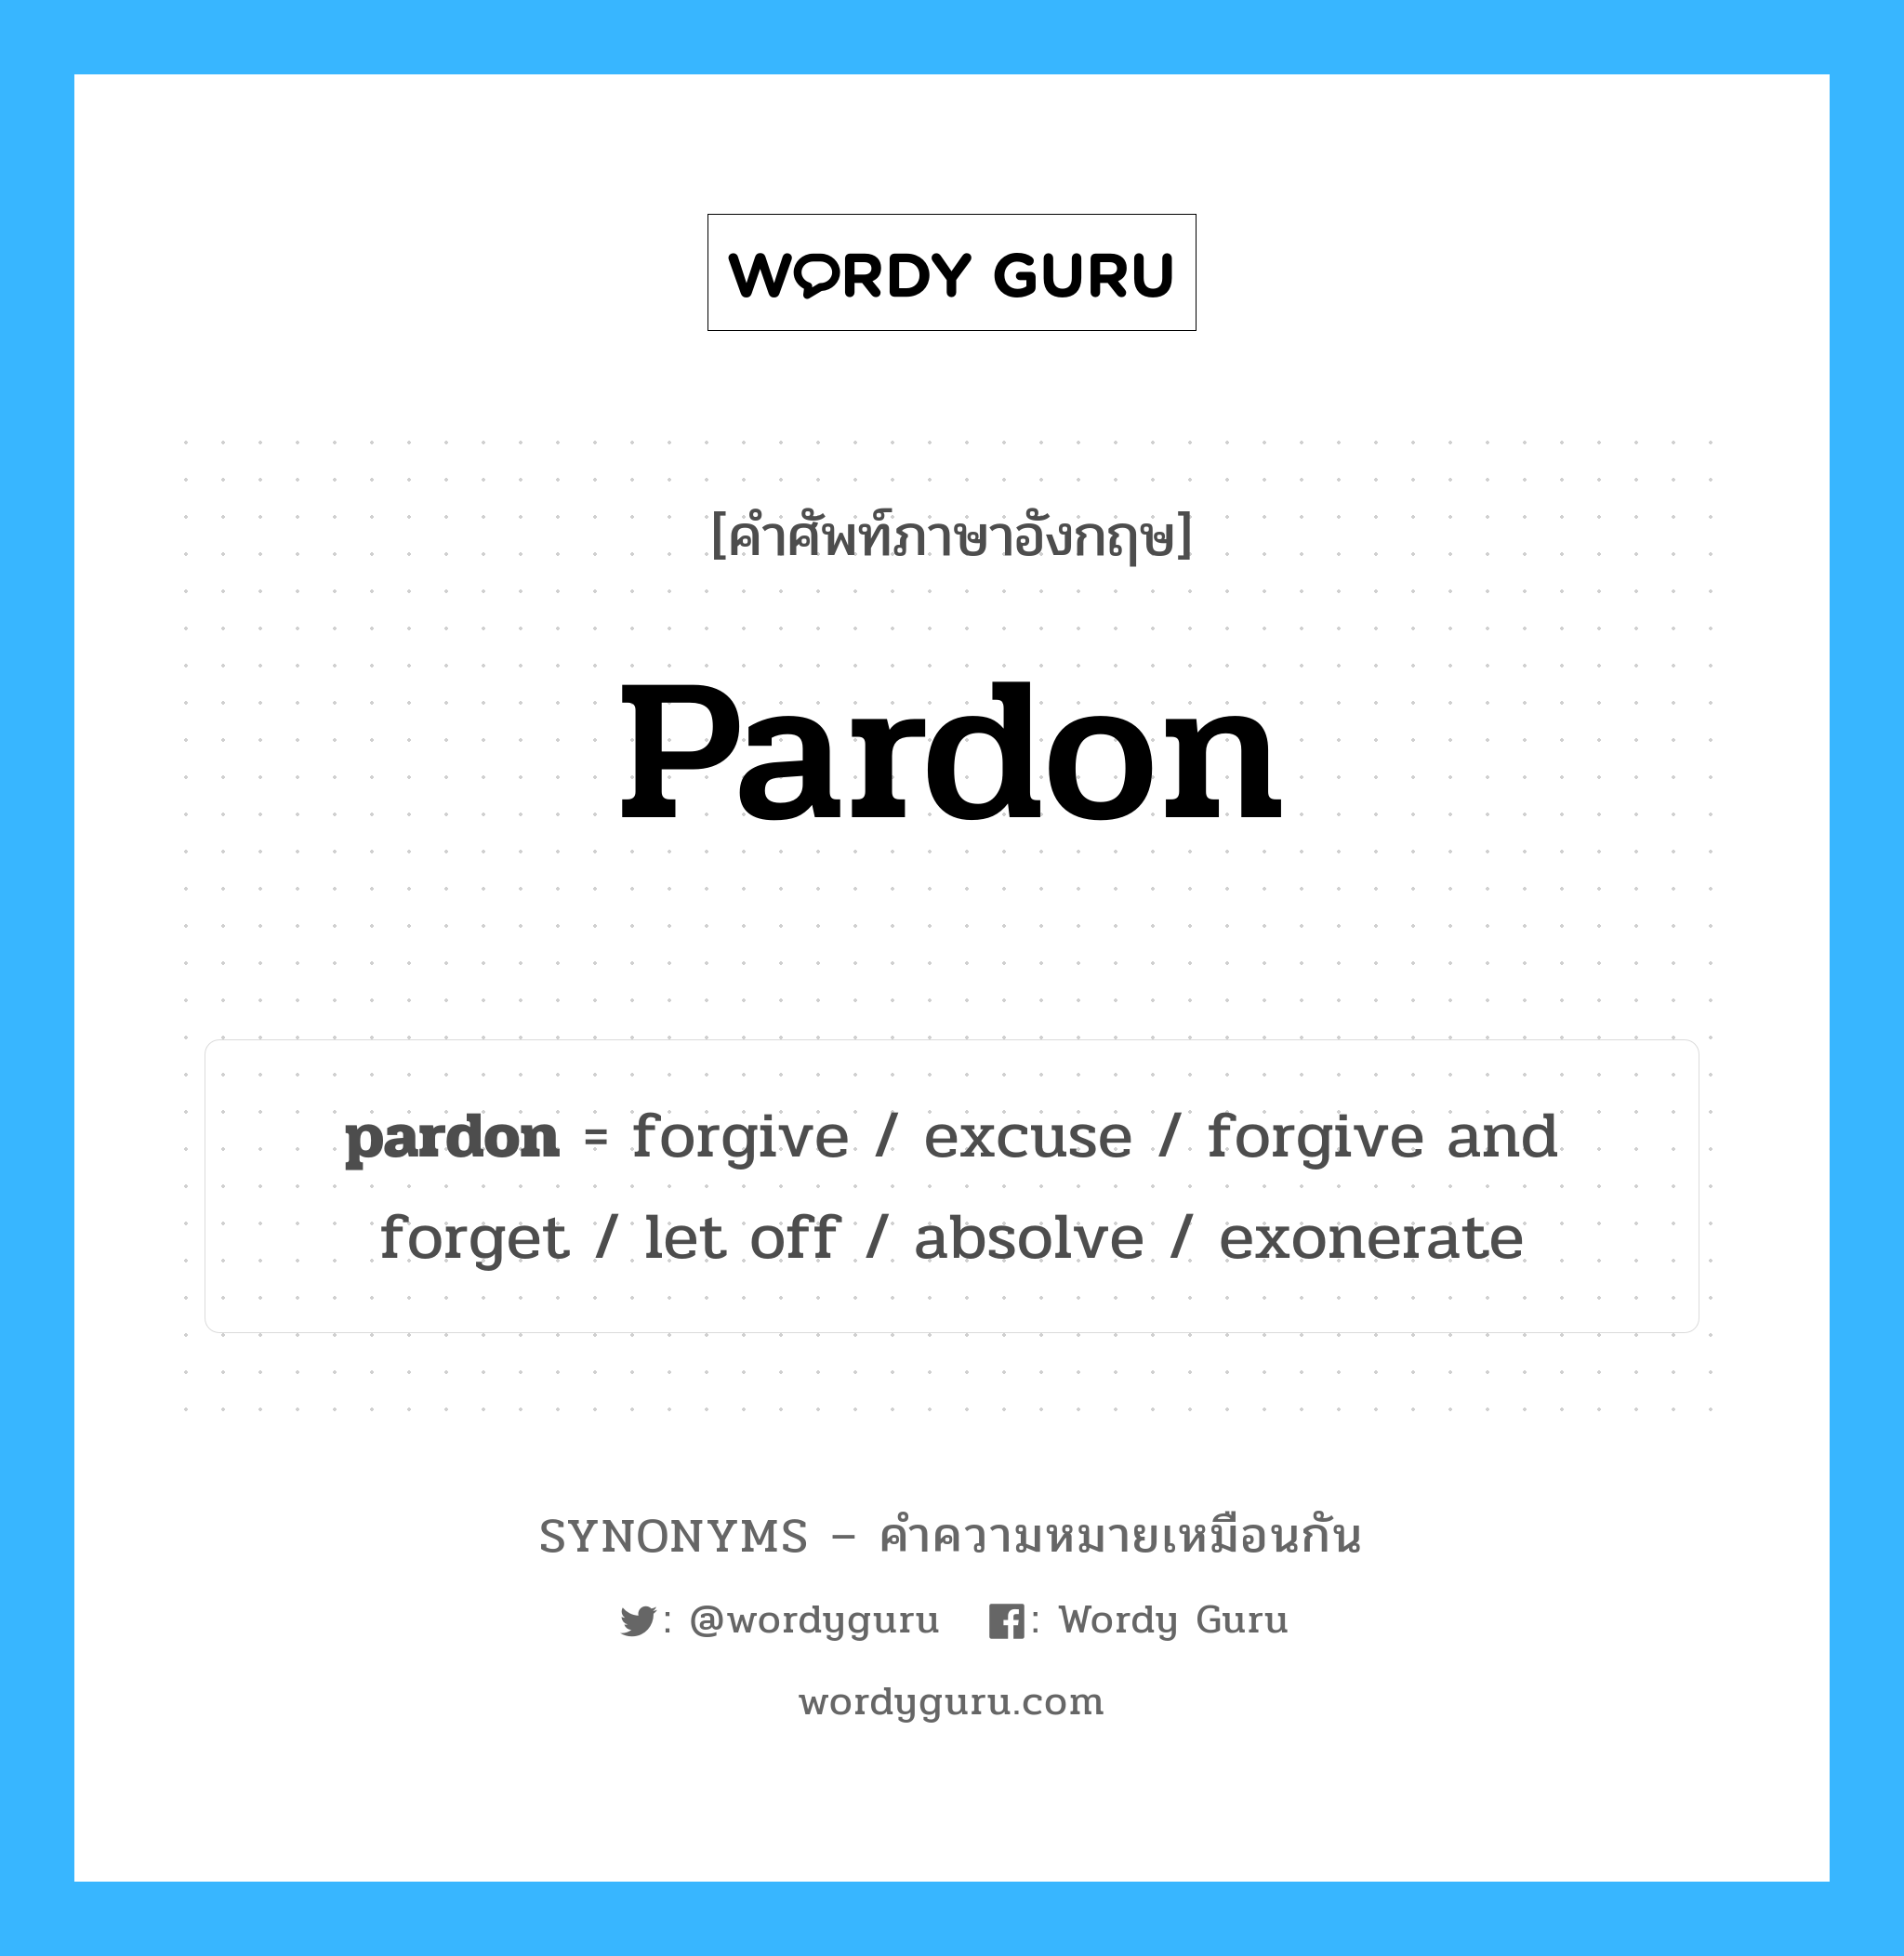 let off เป็นหนึ่งใน pardon และมีคำอื่น ๆ อีกดังนี้, คำศัพท์ภาษาอังกฤษ let off ความหมายคล้ายกันกับ pardon แปลว่า ให้ออก หมวด pardon